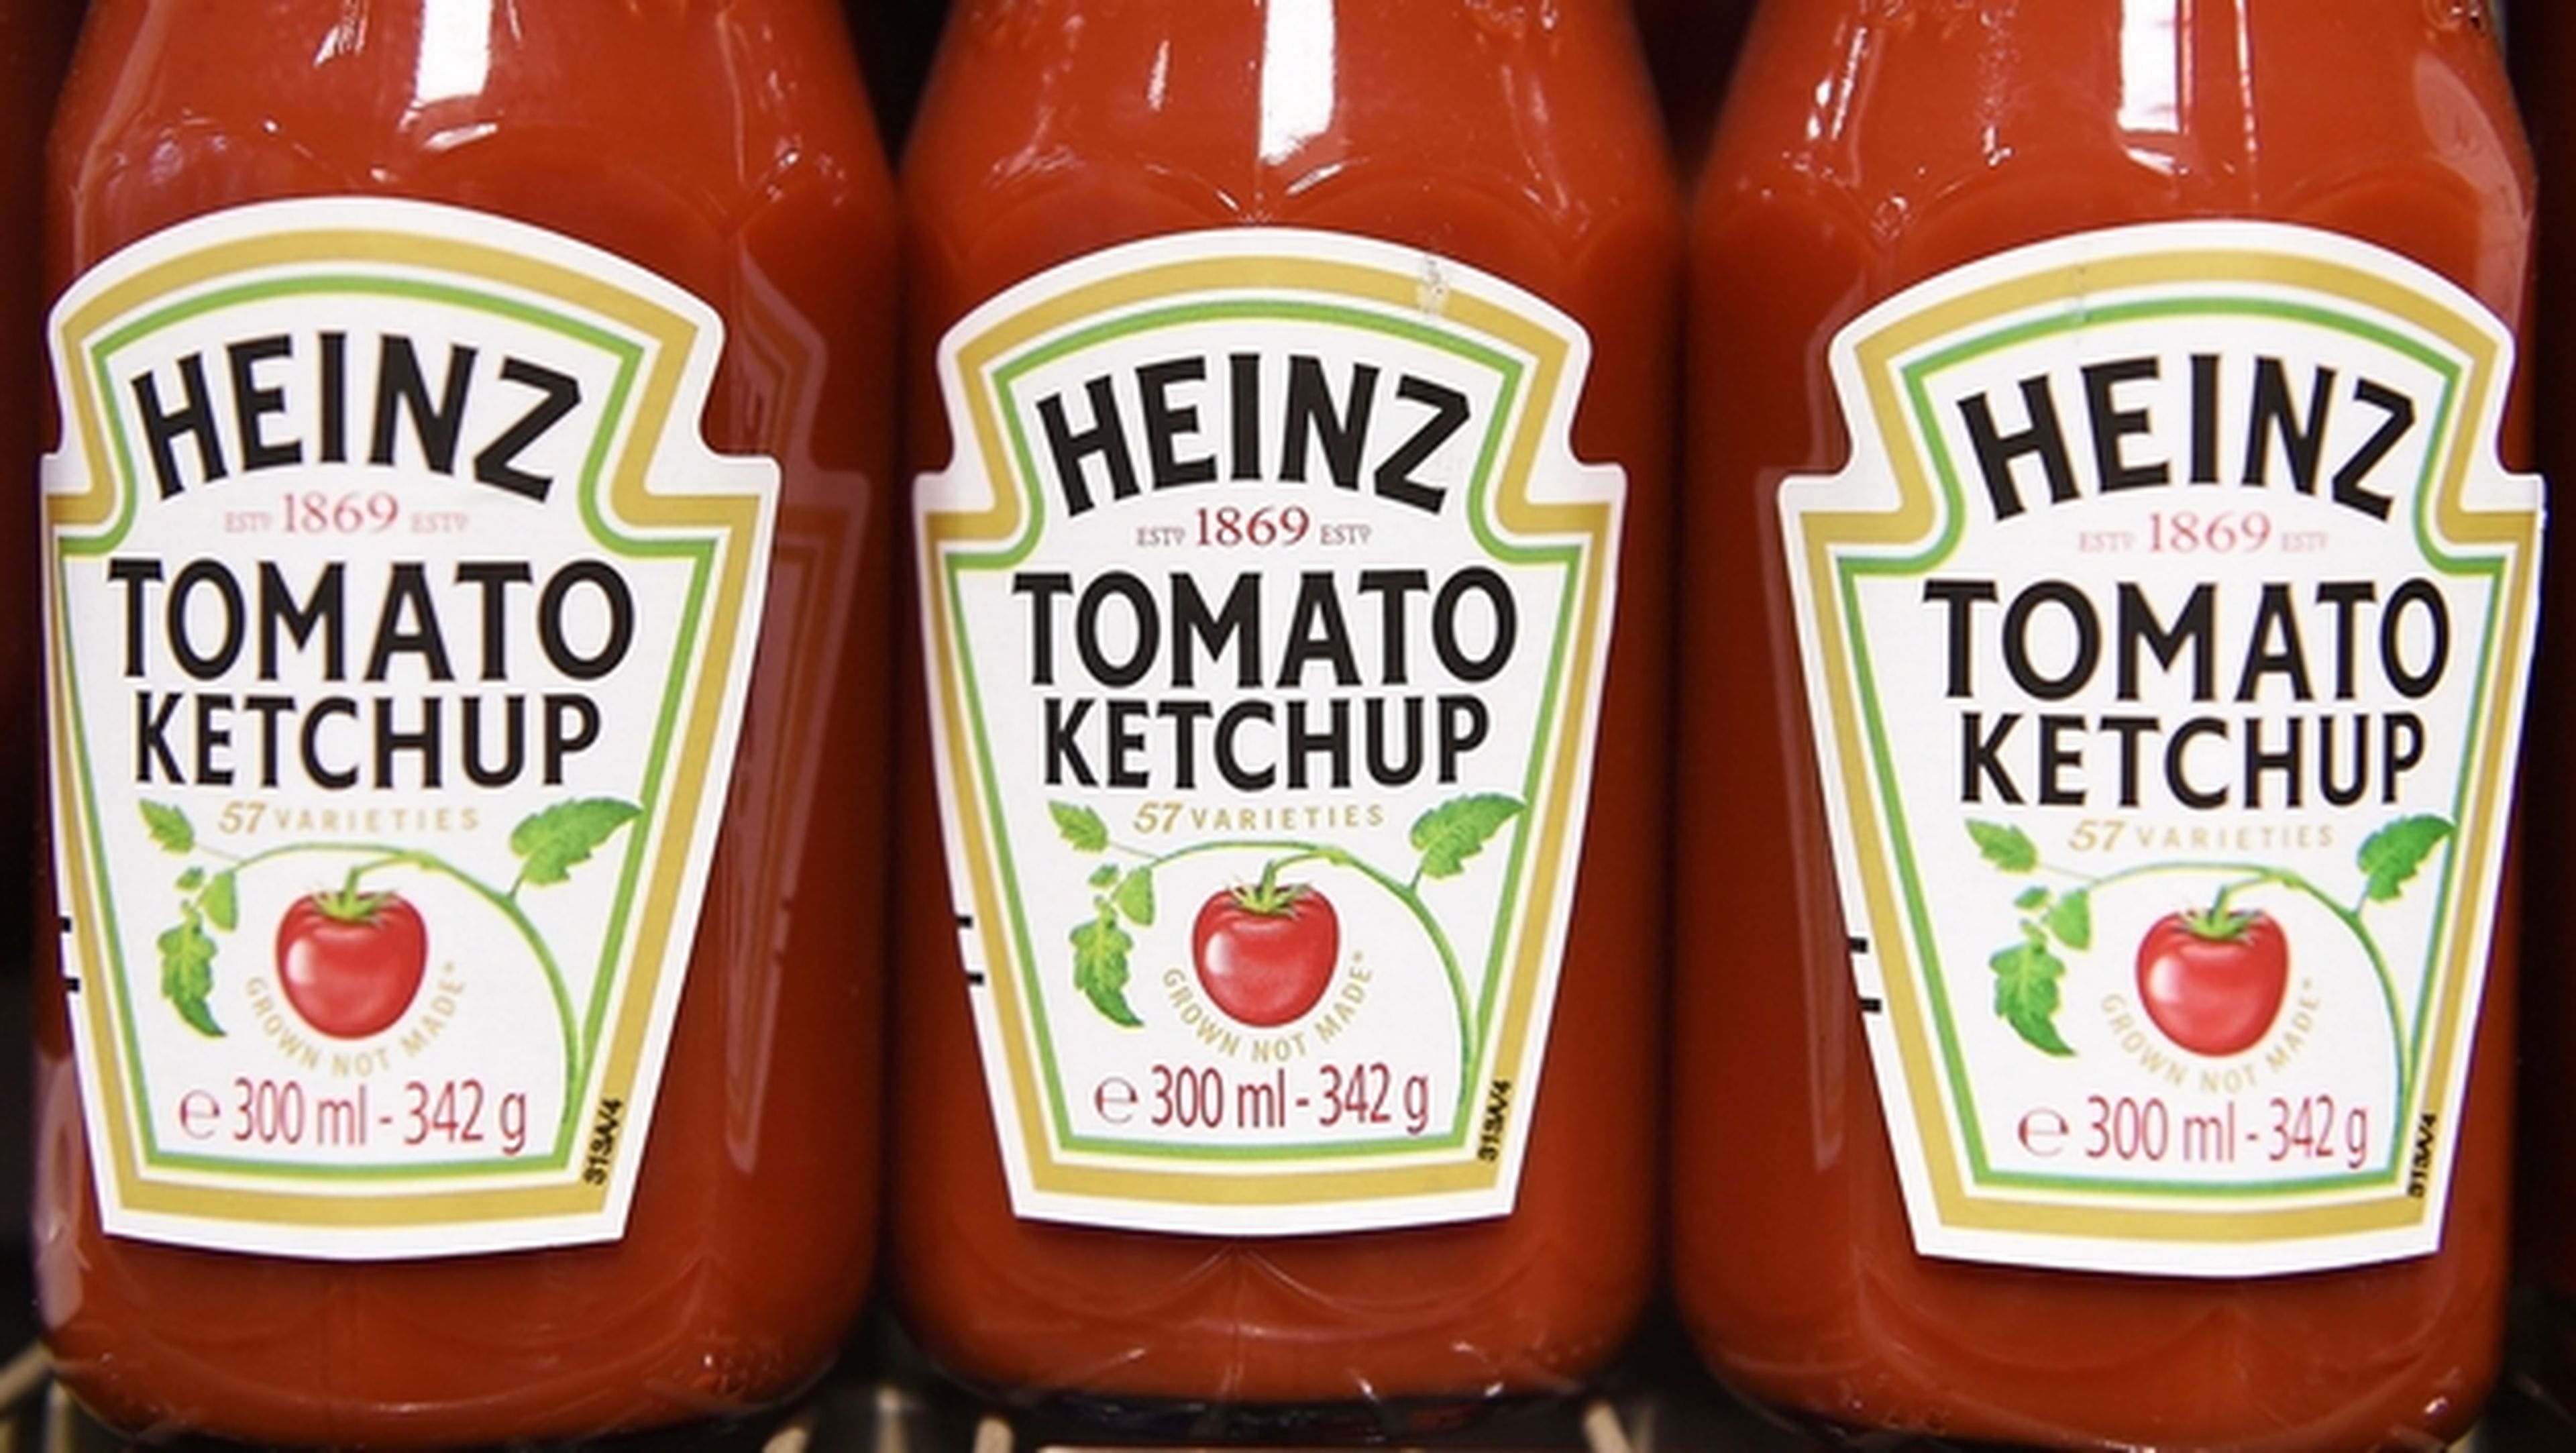 Si quieres porno, apunta con tu móvil a un bote de ketchup Heinz.